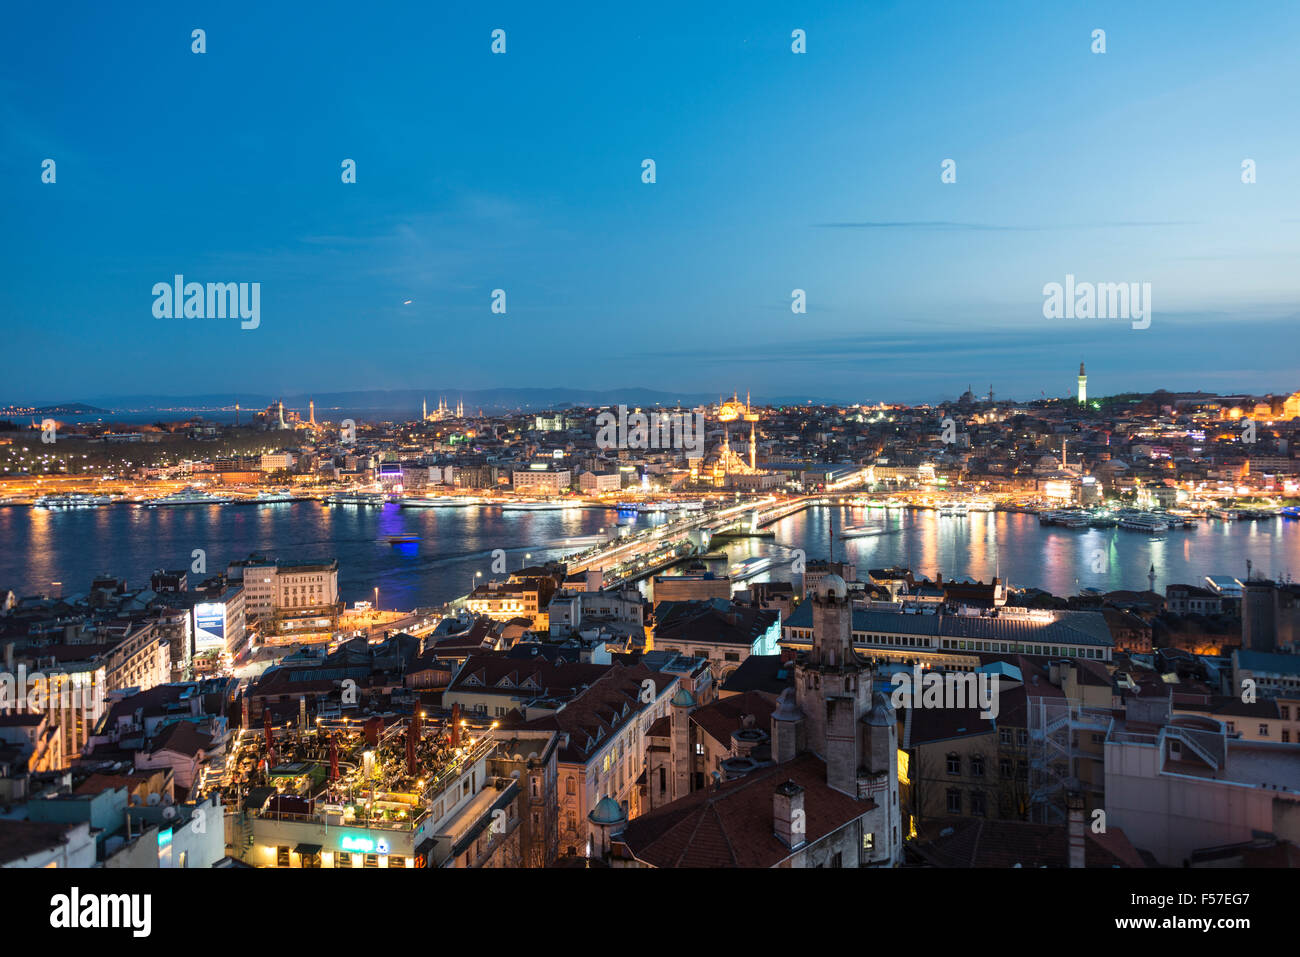 Stadtbild in der Abenddämmerung, Galata-Brücke, Goldenes Horn, Bosporus, Istanbul, Europäische Side, Türkei Stockfoto